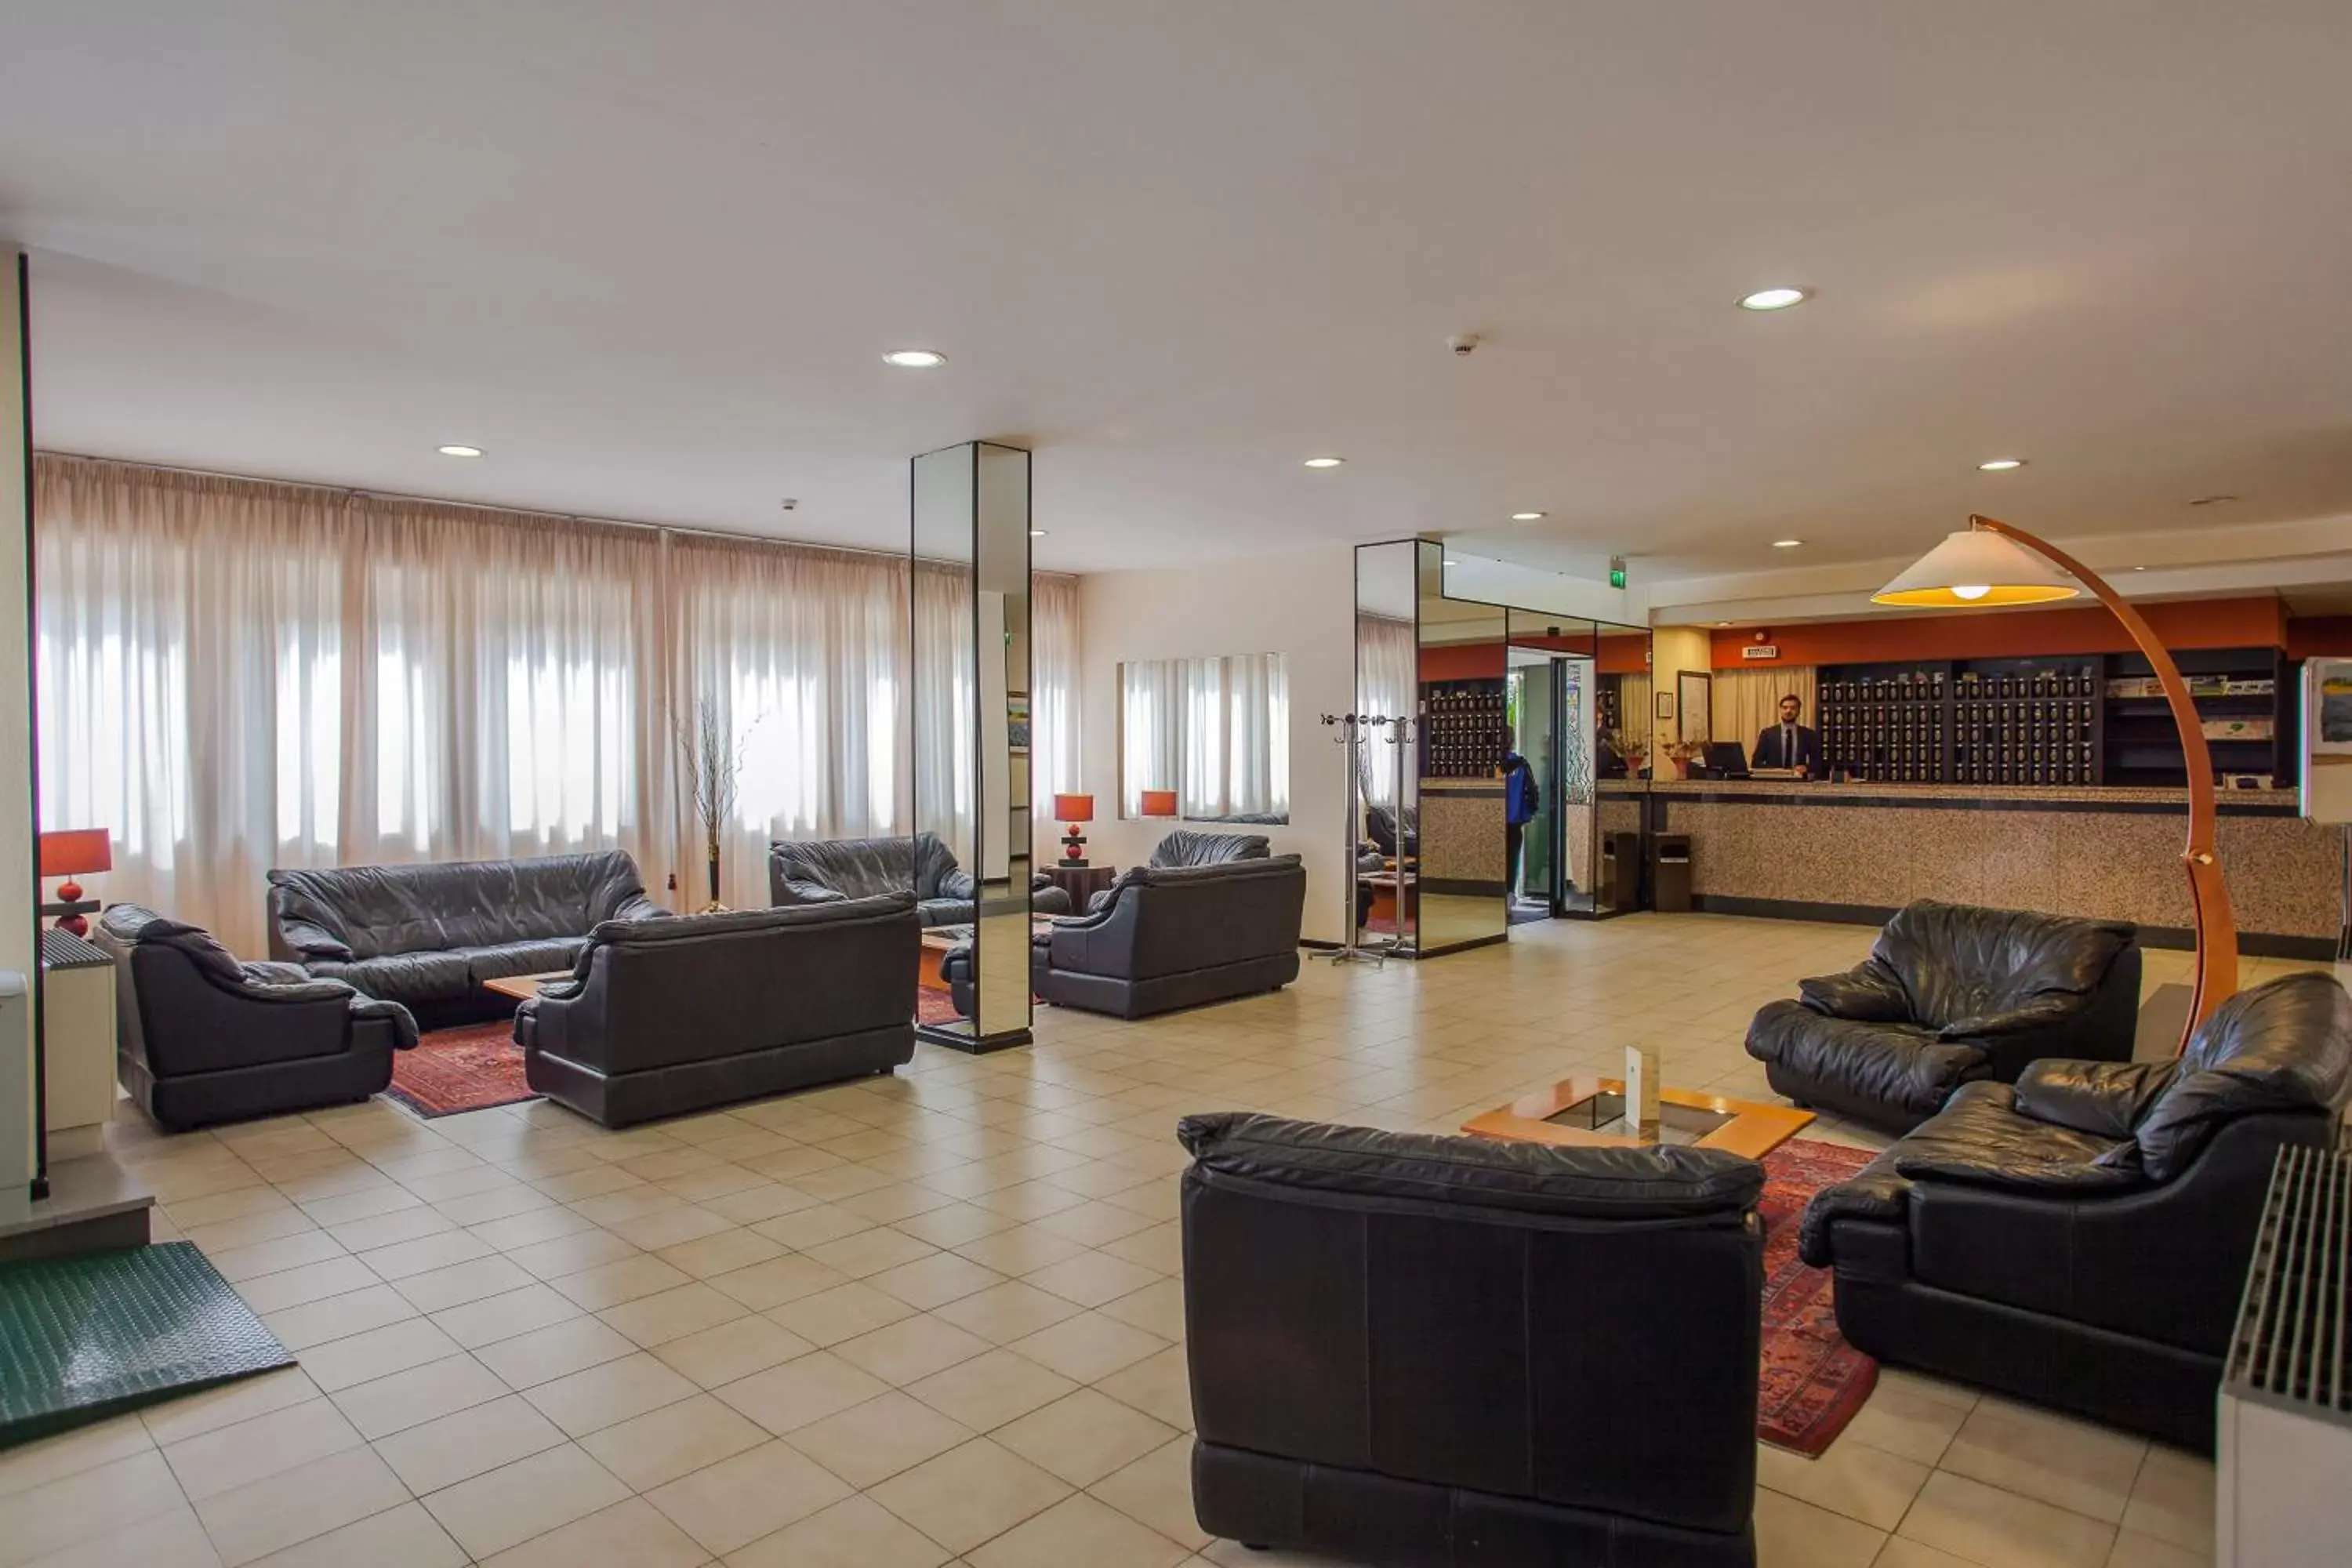 Lobby or reception, Lobby/Reception in Hotel Quadrifoglio